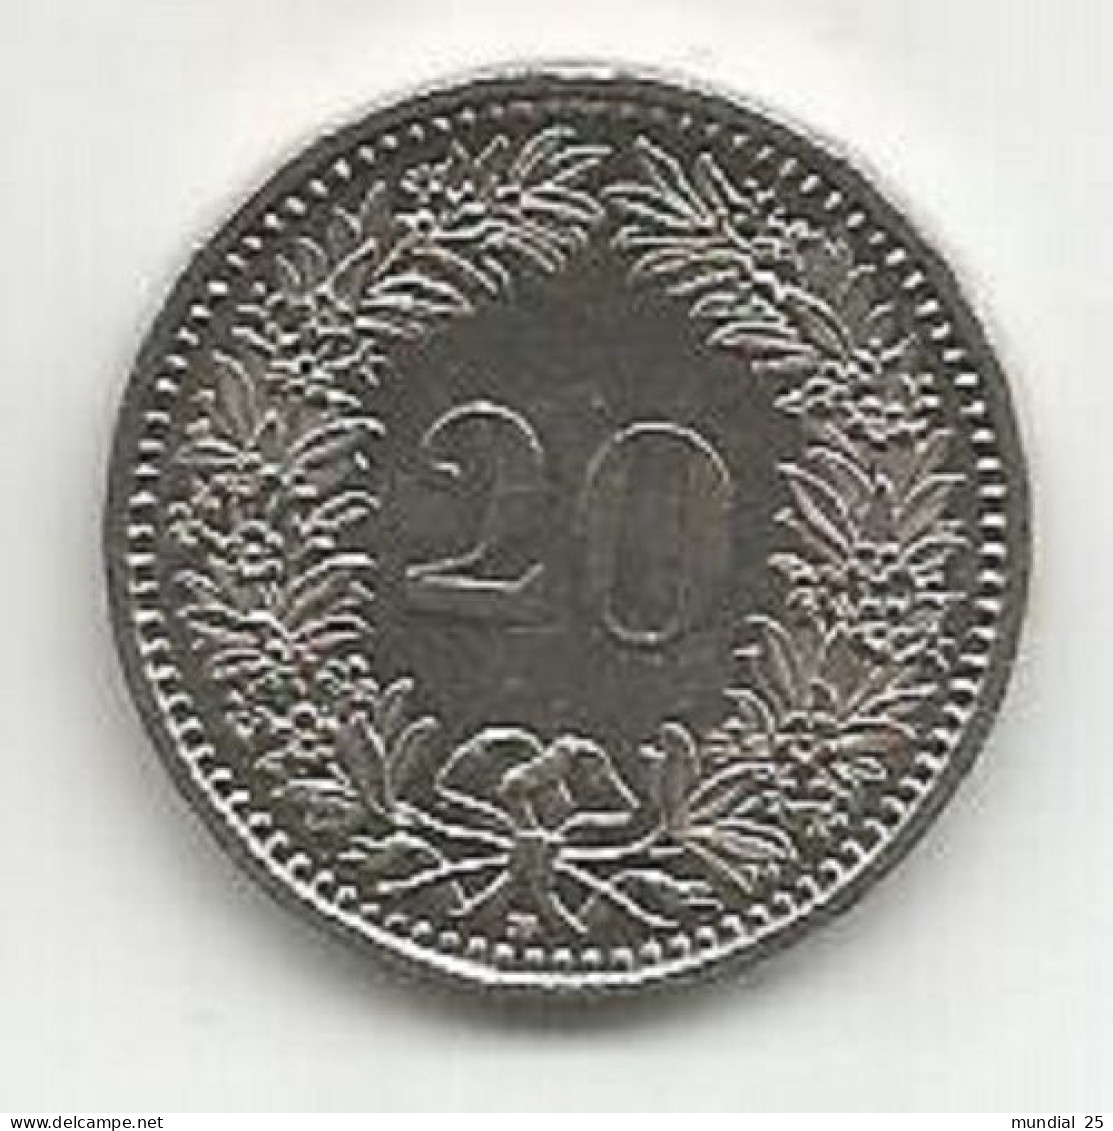 SWITZERLAND 20 RAPPEN 1994 B - 20 Centimes / Rappen